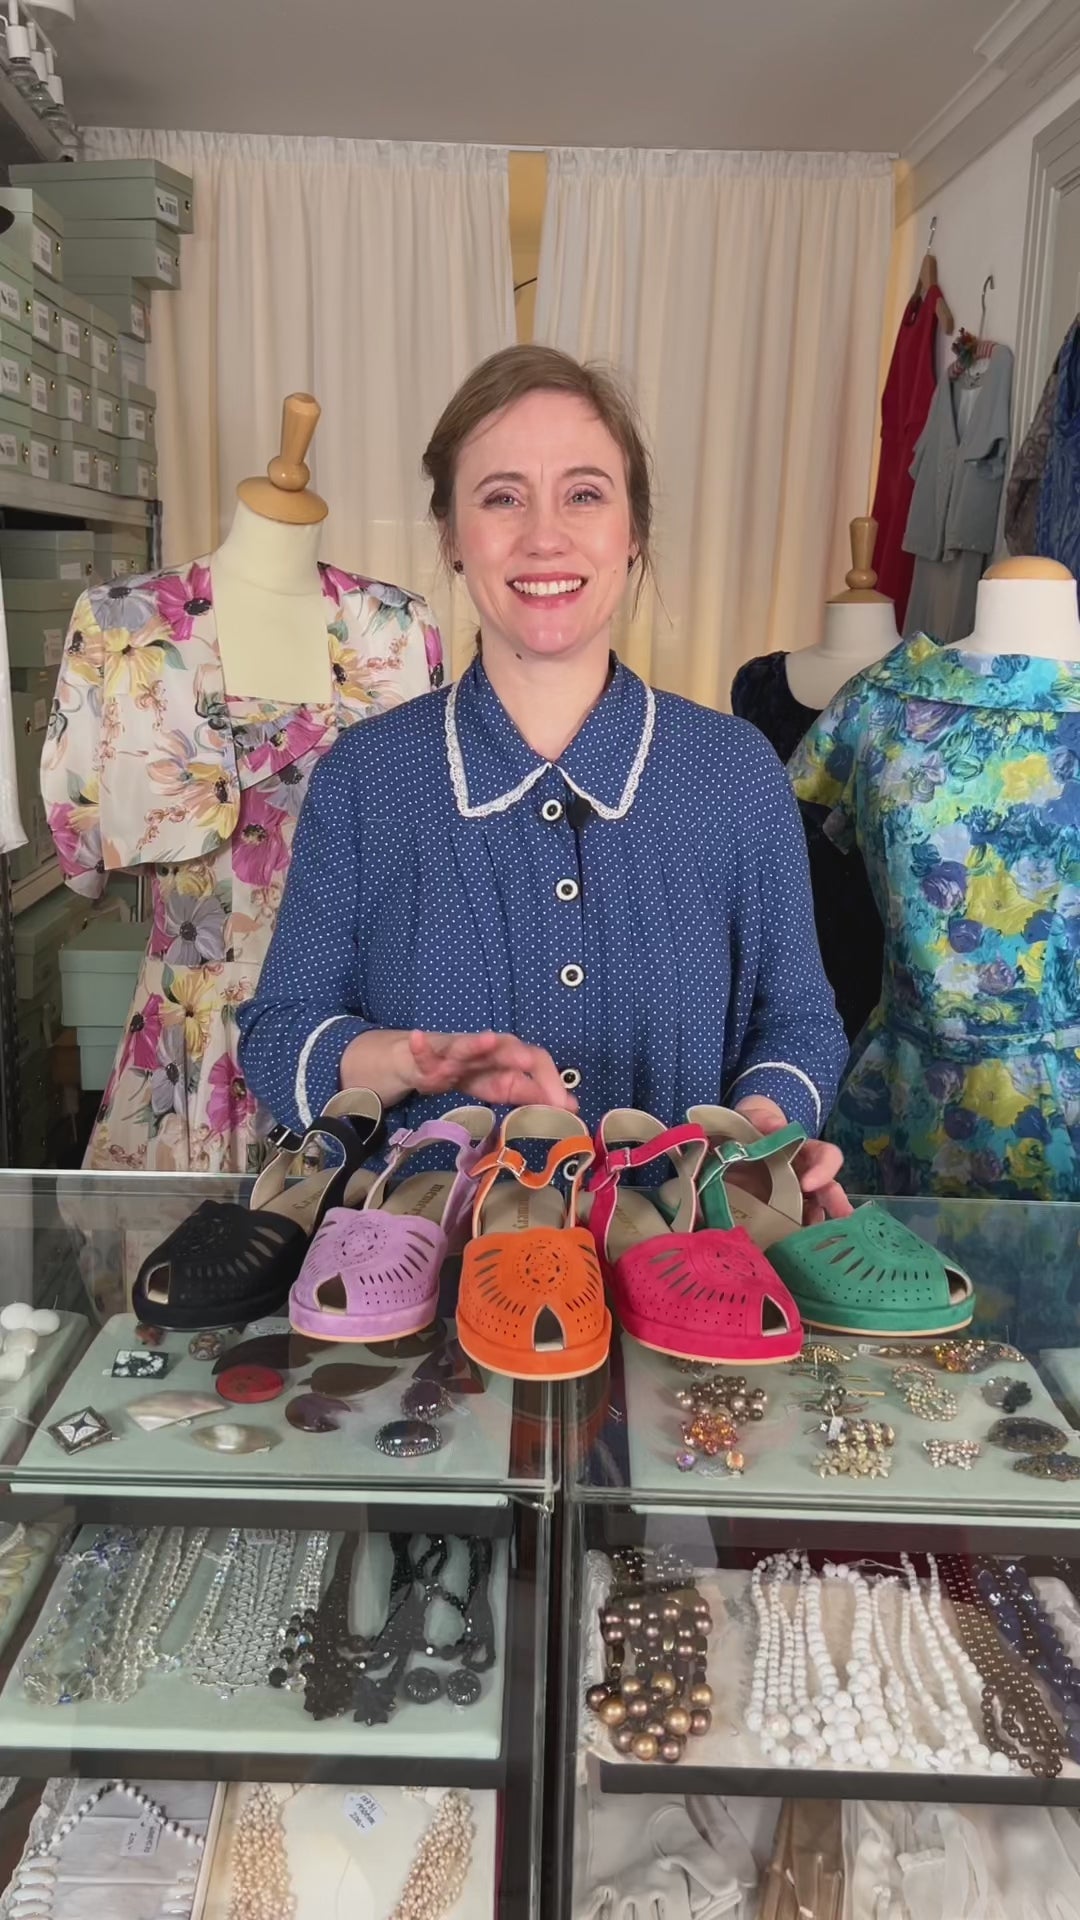 Bløde 1940'er / 1950'er inspirerede sandaler - Sort - Ella